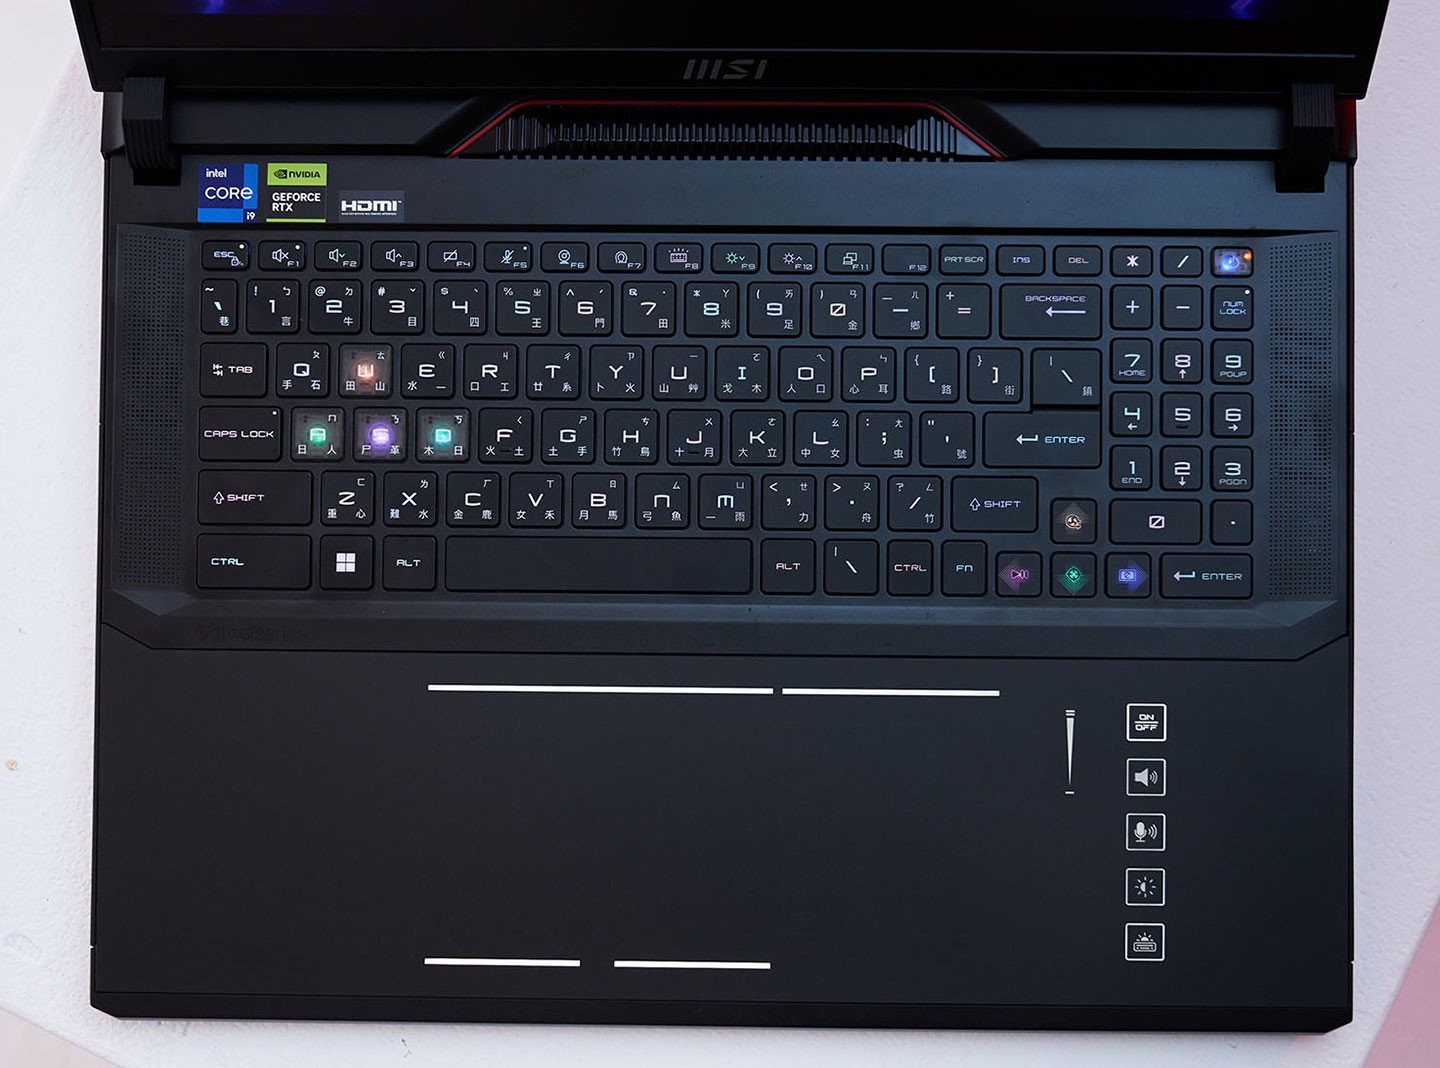 由於 Raider GE78 HX Smart TouchPad 的機身尺寸不小，因機身 C 面有充裕的空間配置全尺寸島式鍵盤，並於右側規劃了實用的九宮數鍵，下方則是為用戶提供嶄新操控體驗的「智慧觸控板」區域。